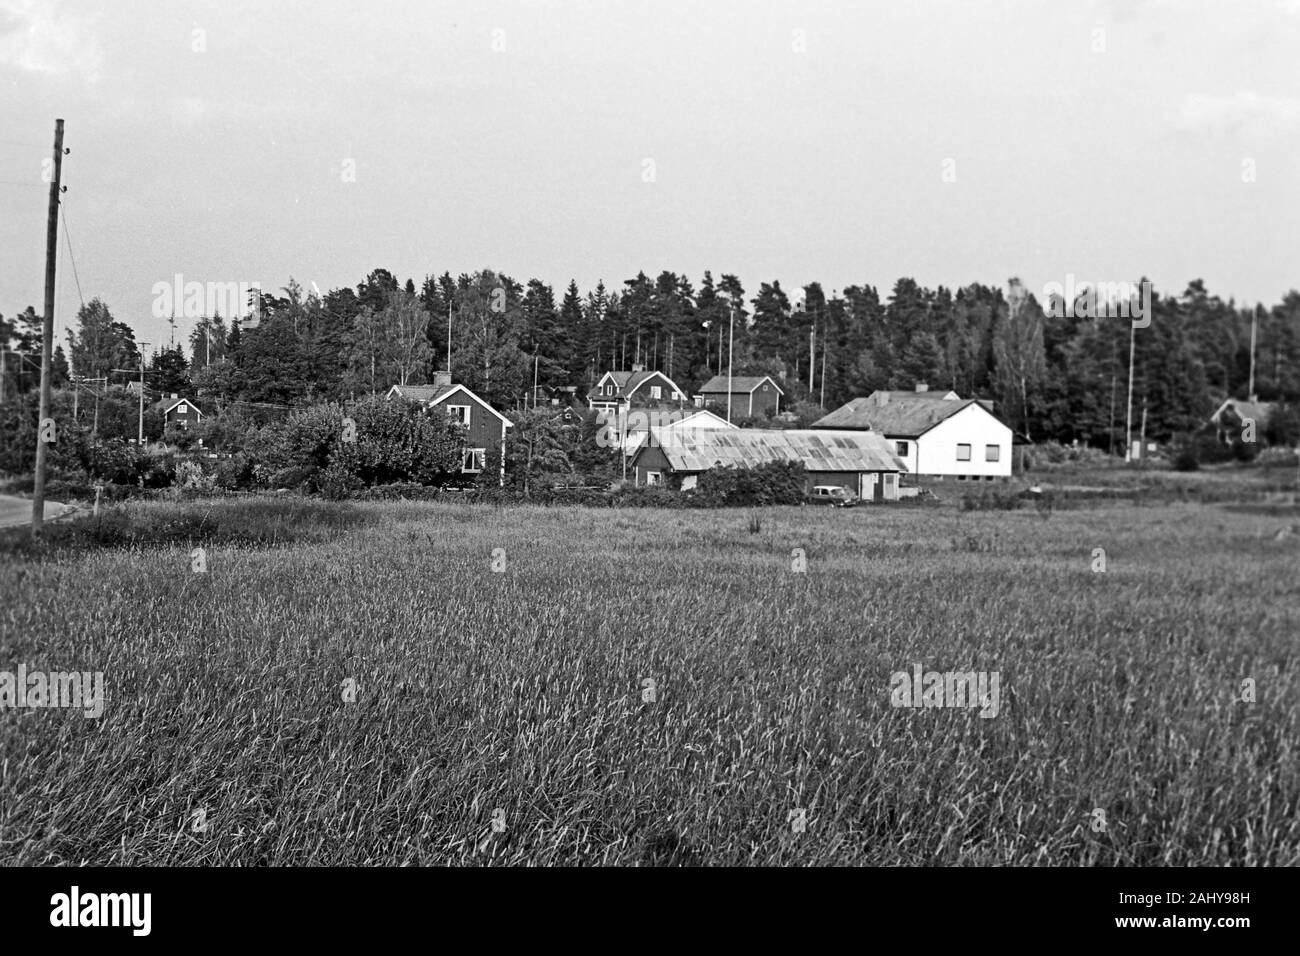 Typische Landhäuser, Schweden 1969.  Typical country houses, Sweden 1969. Stock Photo